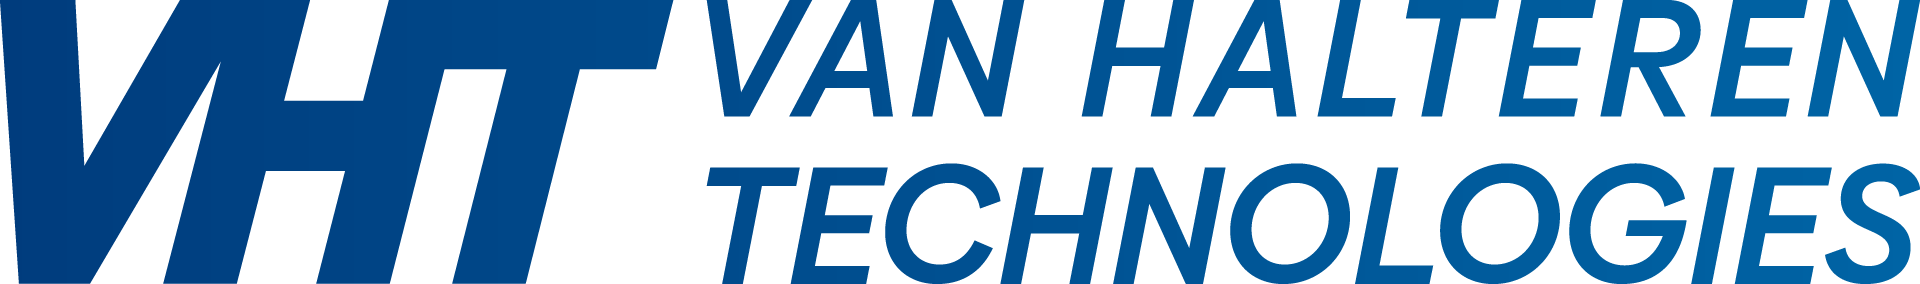 Van Halteren technologies logo